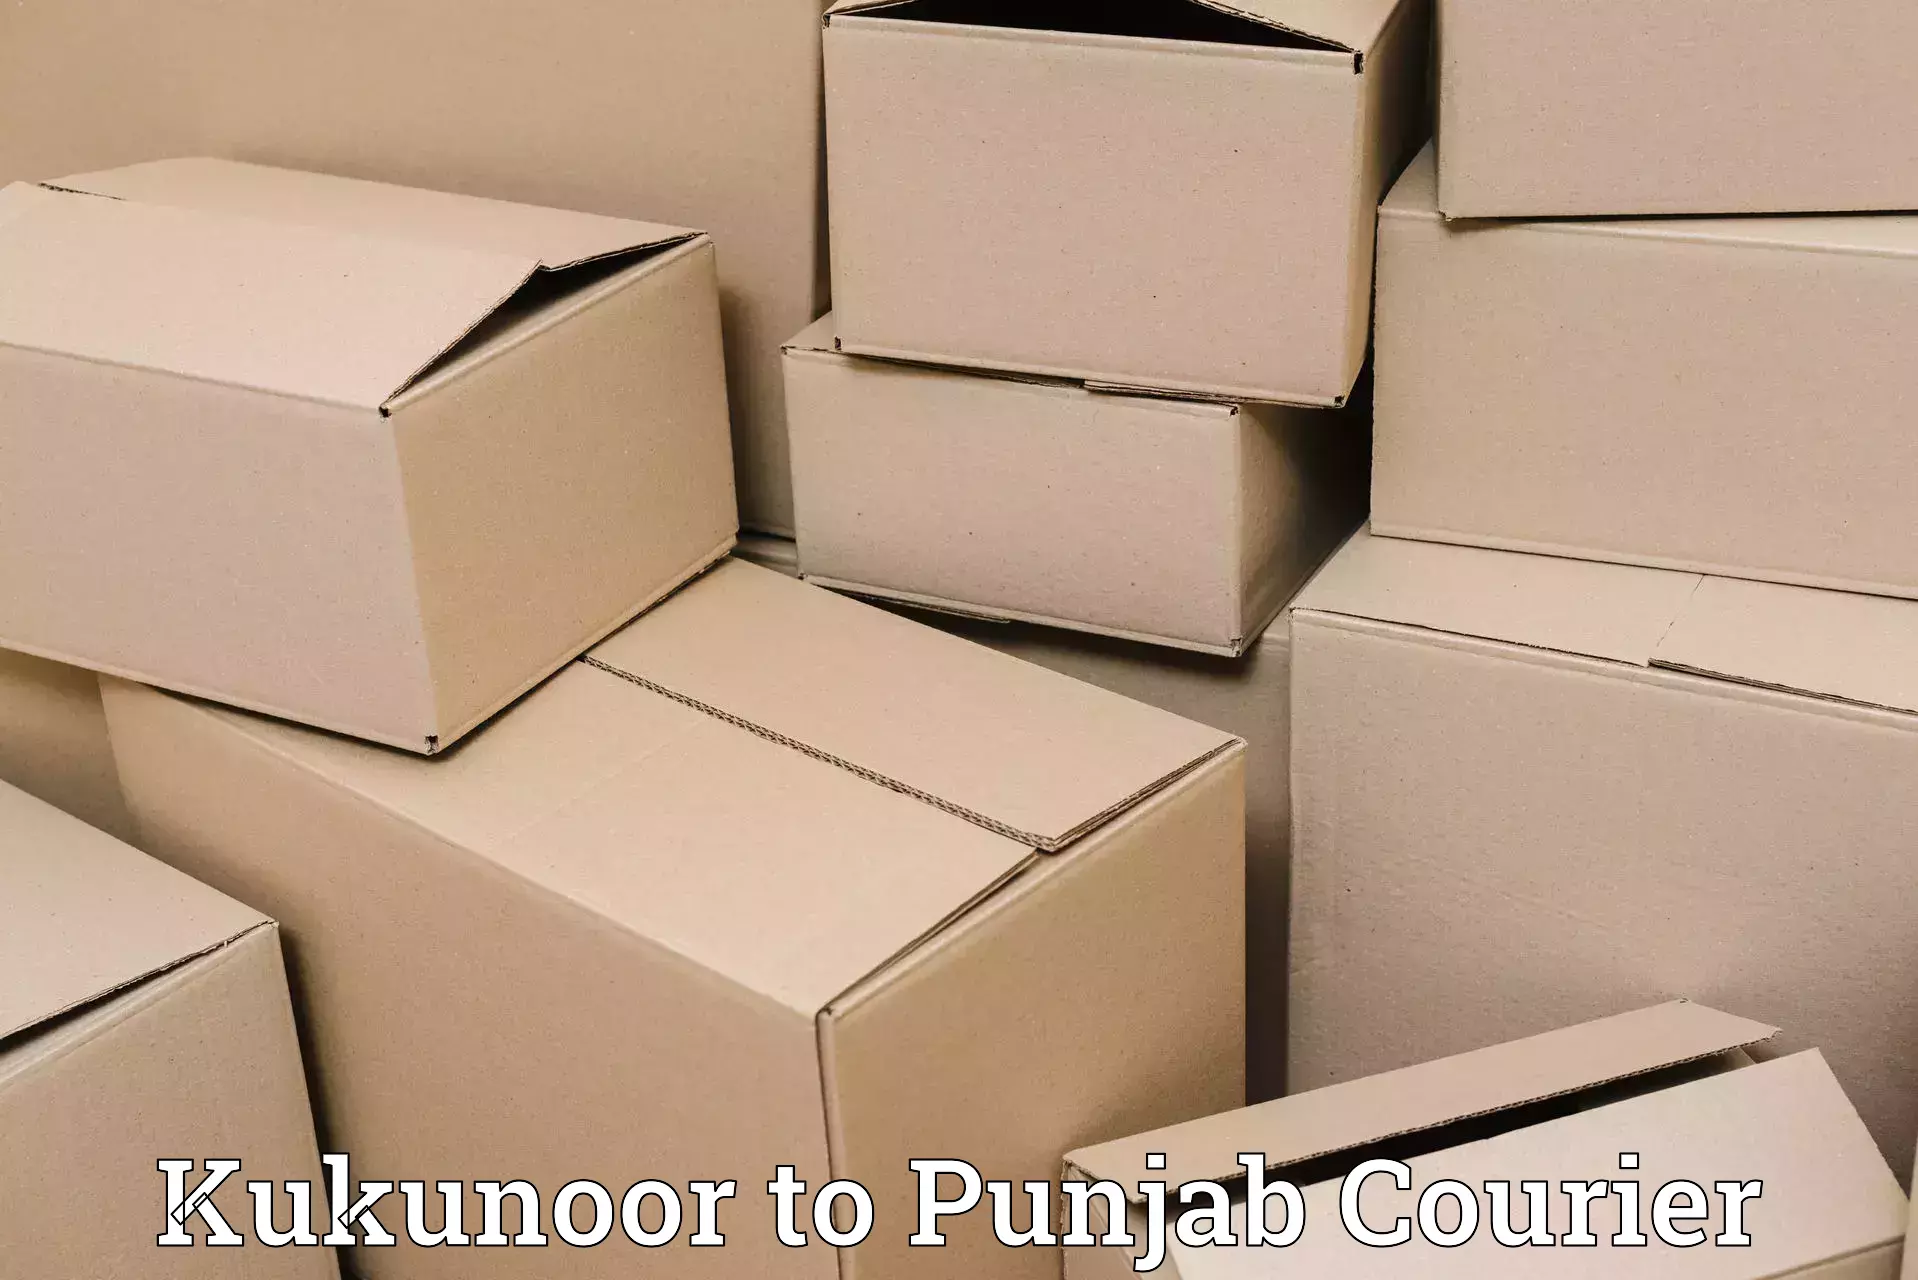 Supply chain efficiency in Kukunoor to Gurdaspur